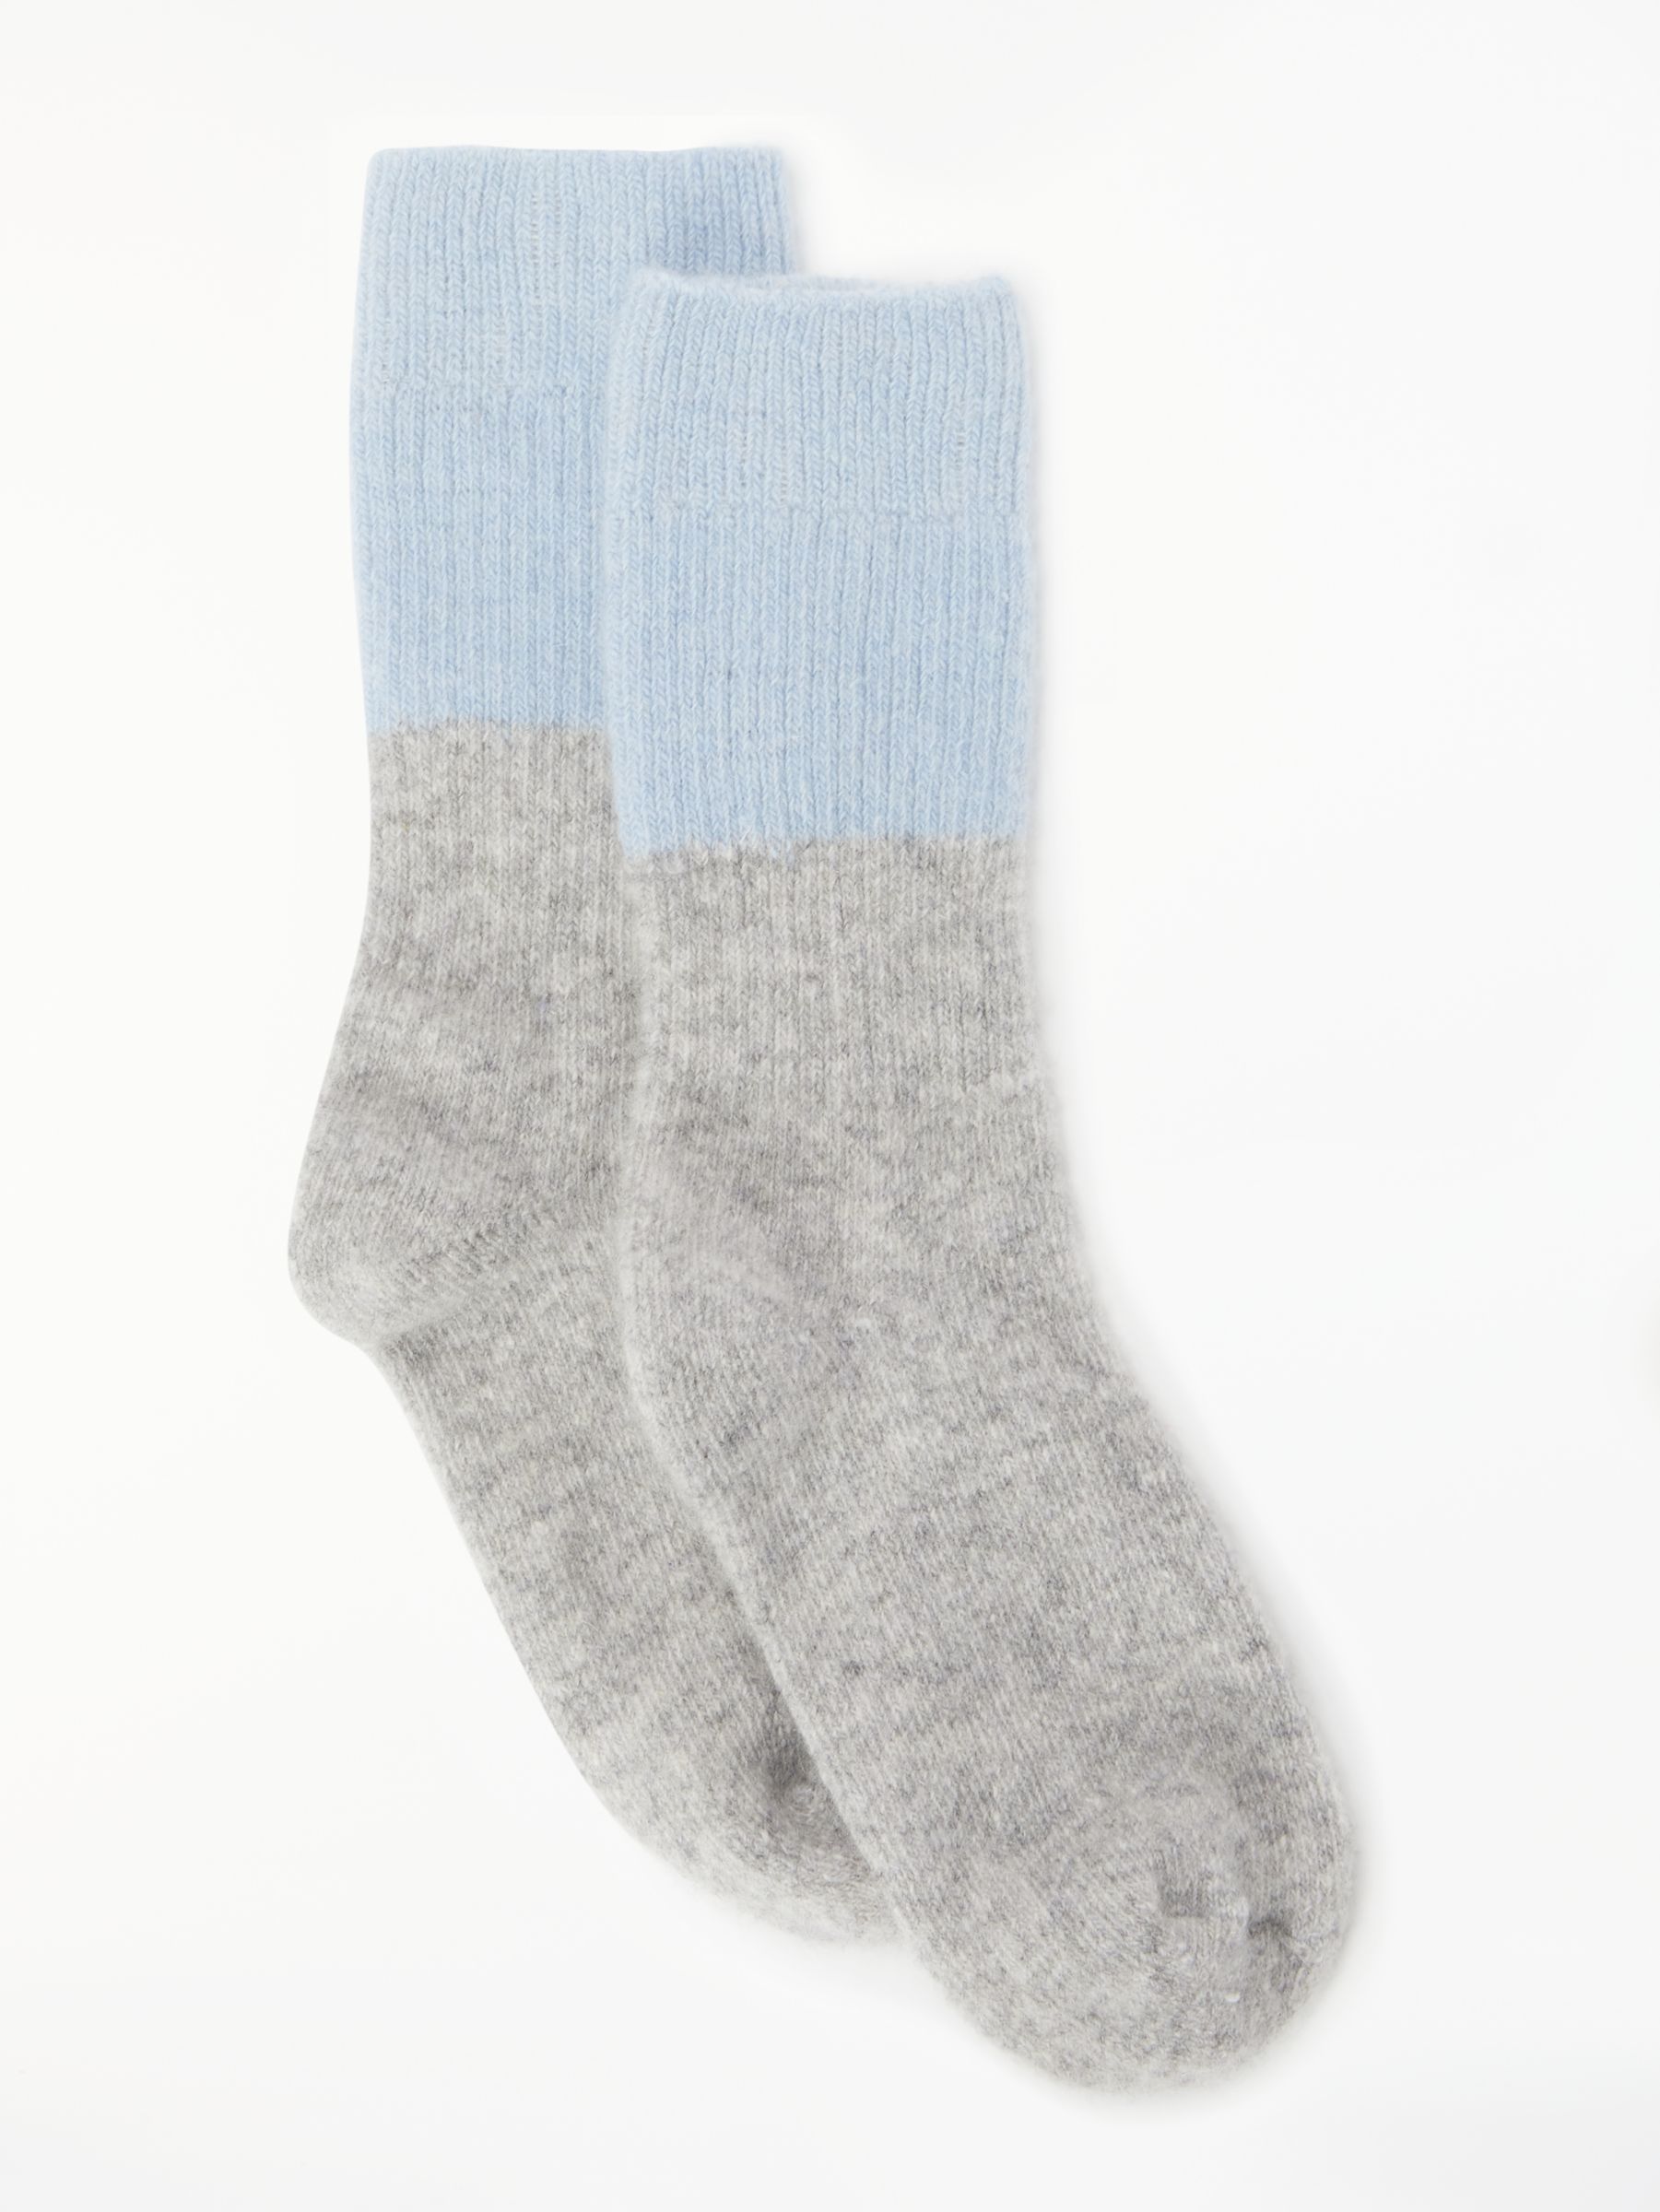 John Lewis & Partners Cashmere Rich Colour Block Ankle Socks